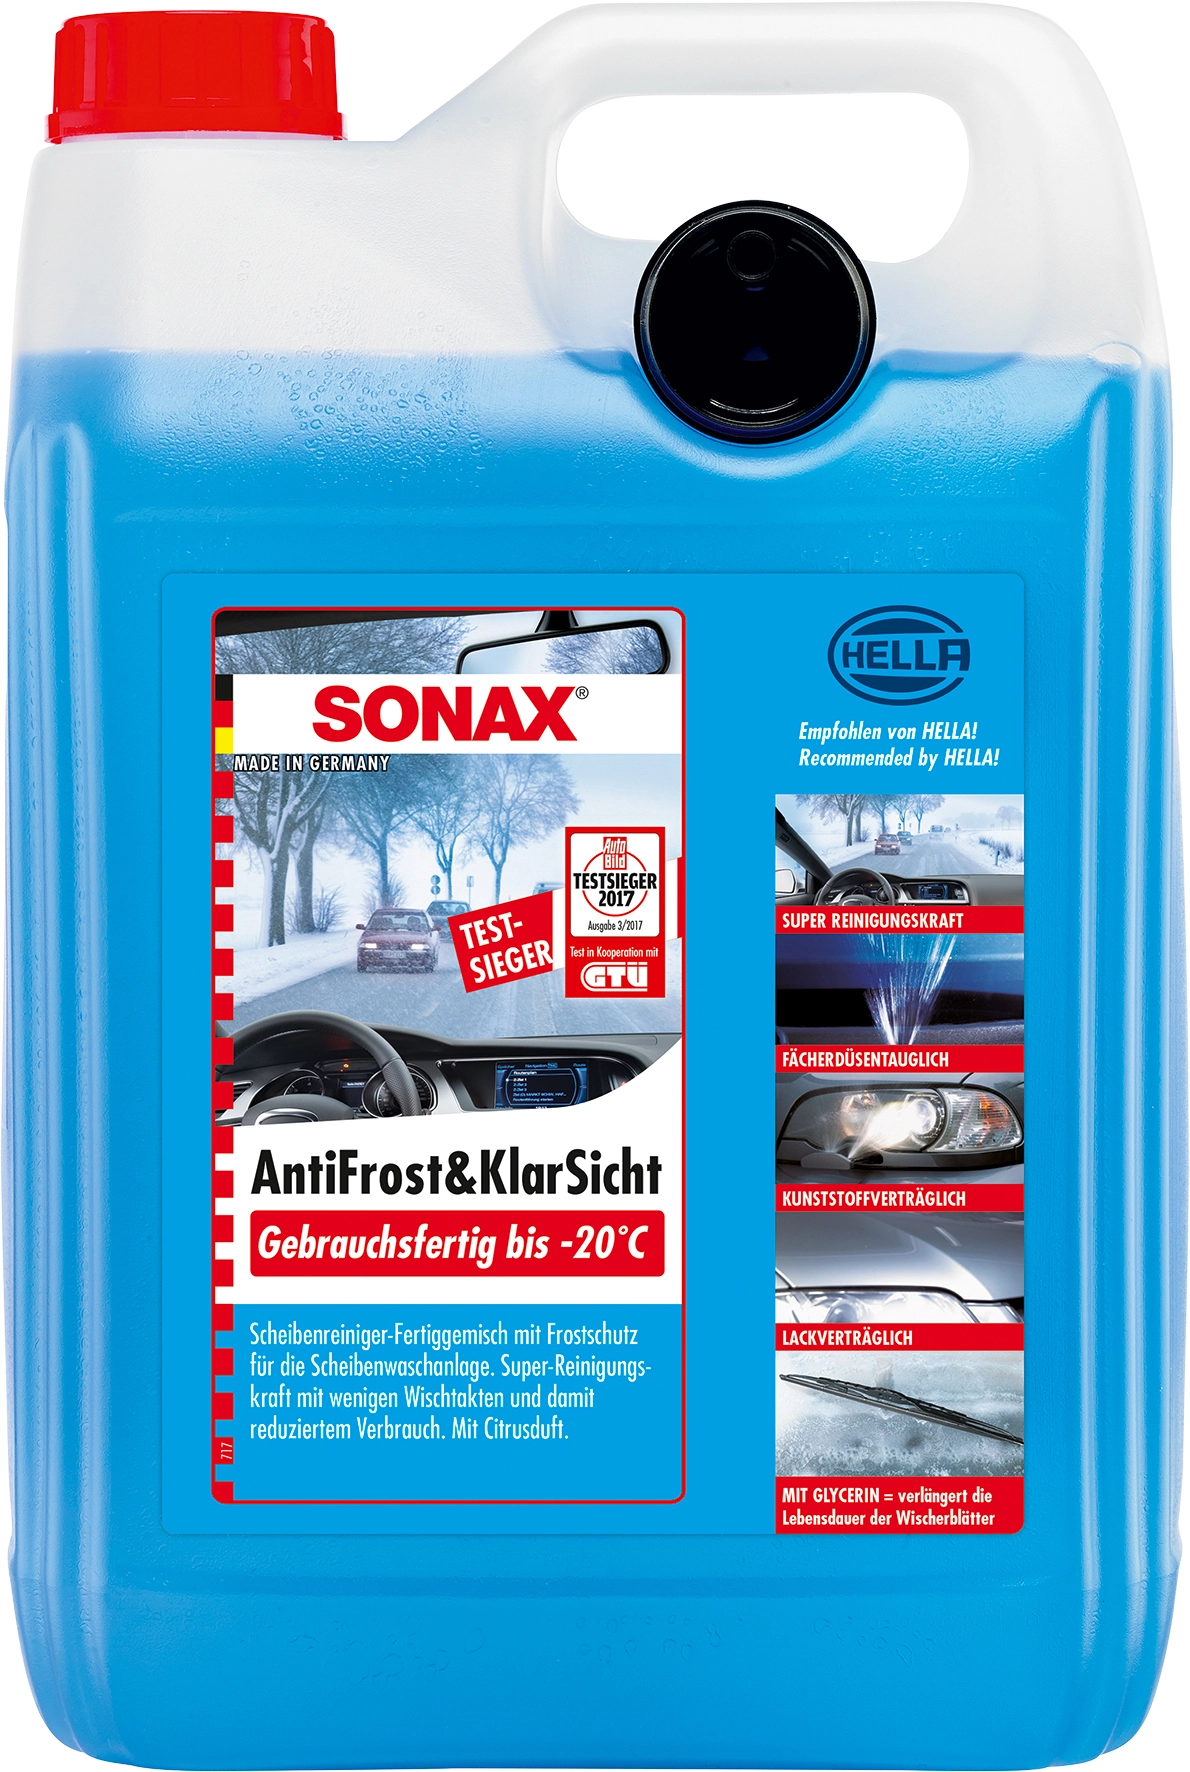 SONAX AntiFrost & KlarSicht Scheiben-Frostschutz Konzentrat, 5L (03325050)  Elektroshop Wagner